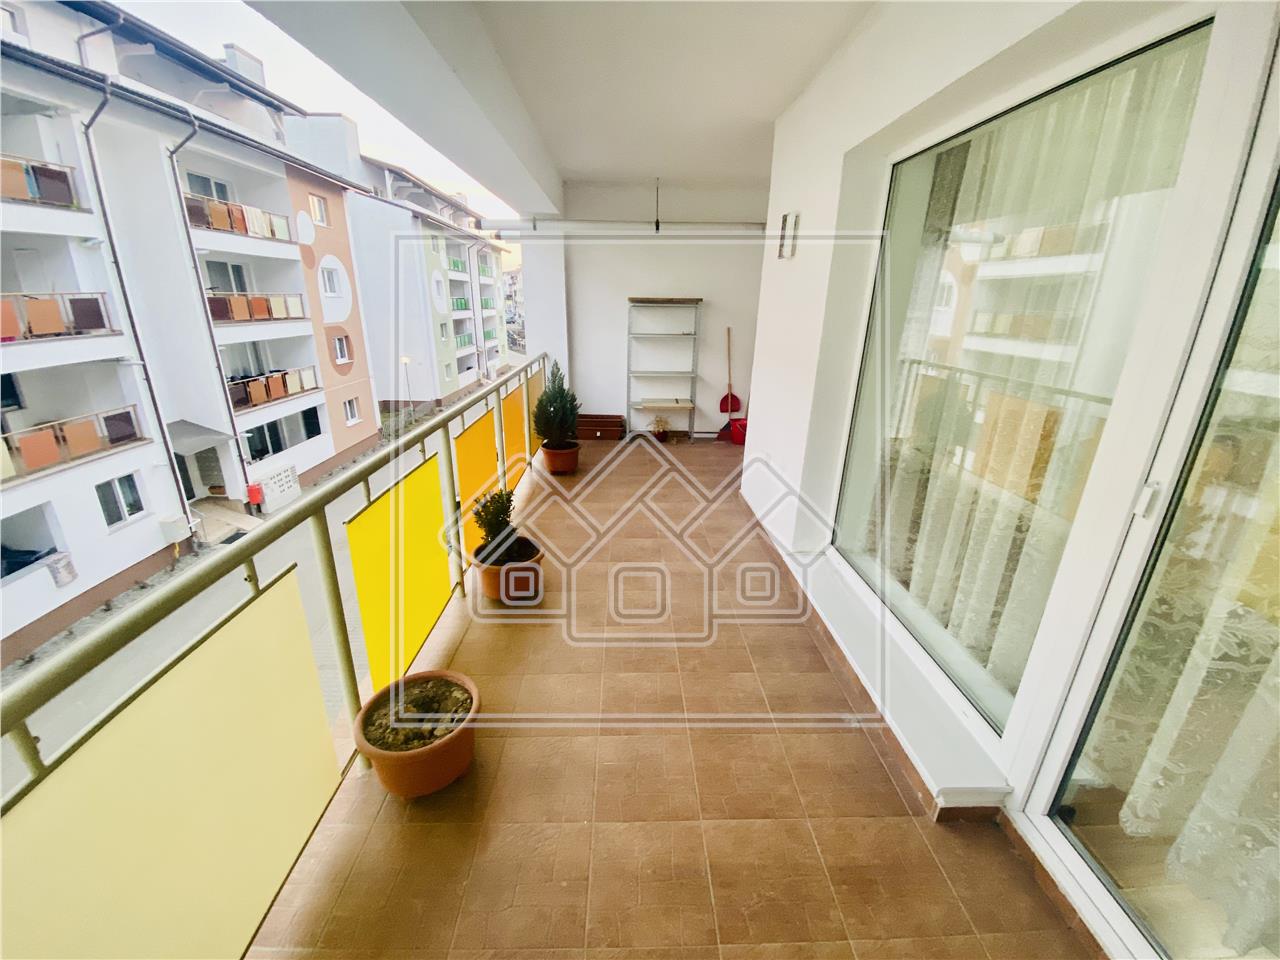 Apartament de inchiriat in Sibiu - 3 camere si balcon mare - D.Stanca